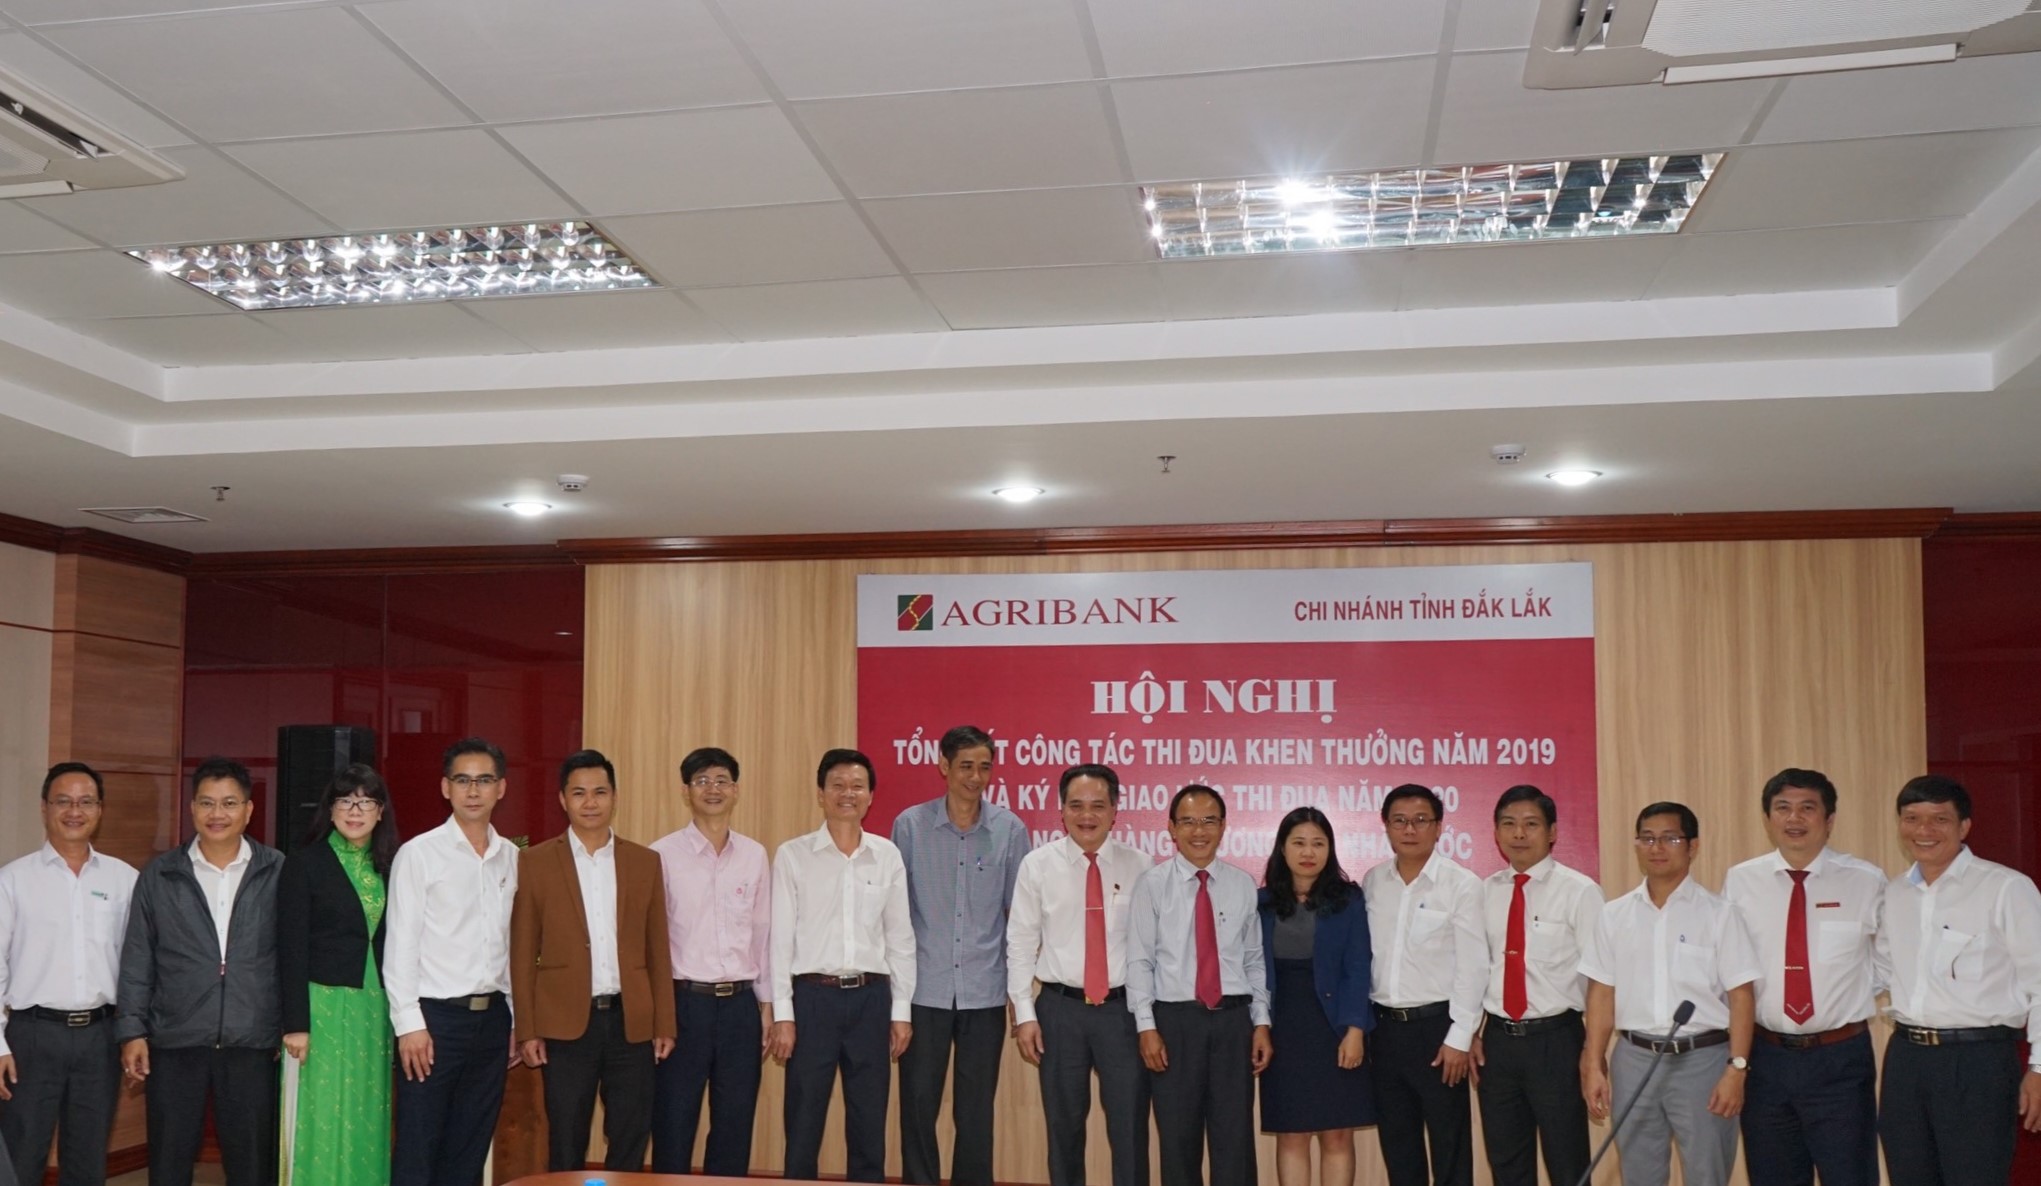 Khối thi đua các Ngân hàng thương mại Nhà nước trên địa bàn tỉnh Đắk Lắk tổng kết hoạt động năm 2019